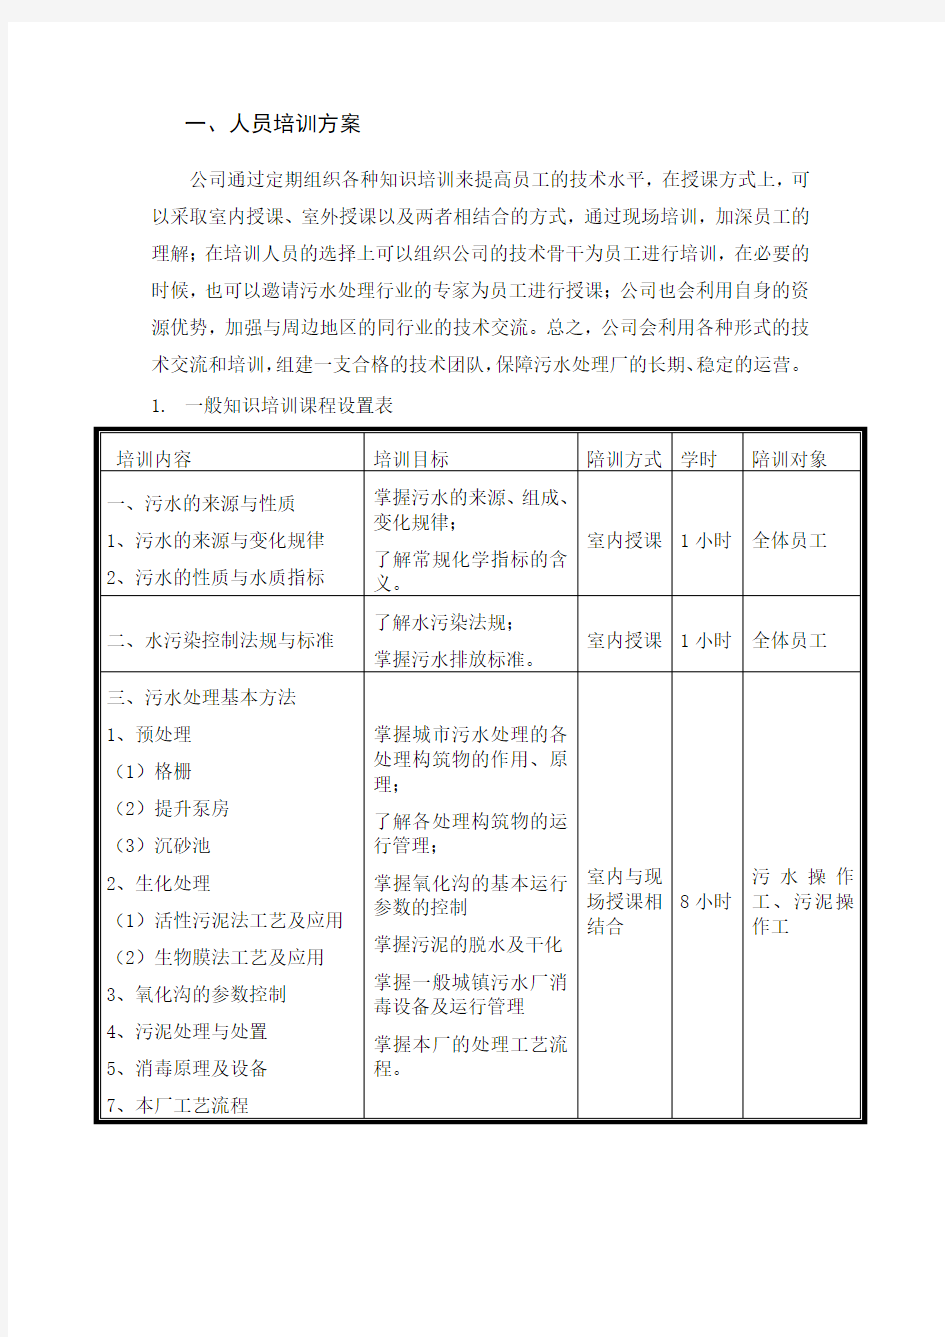 污水处理厂培训方案(可直接使用).docx